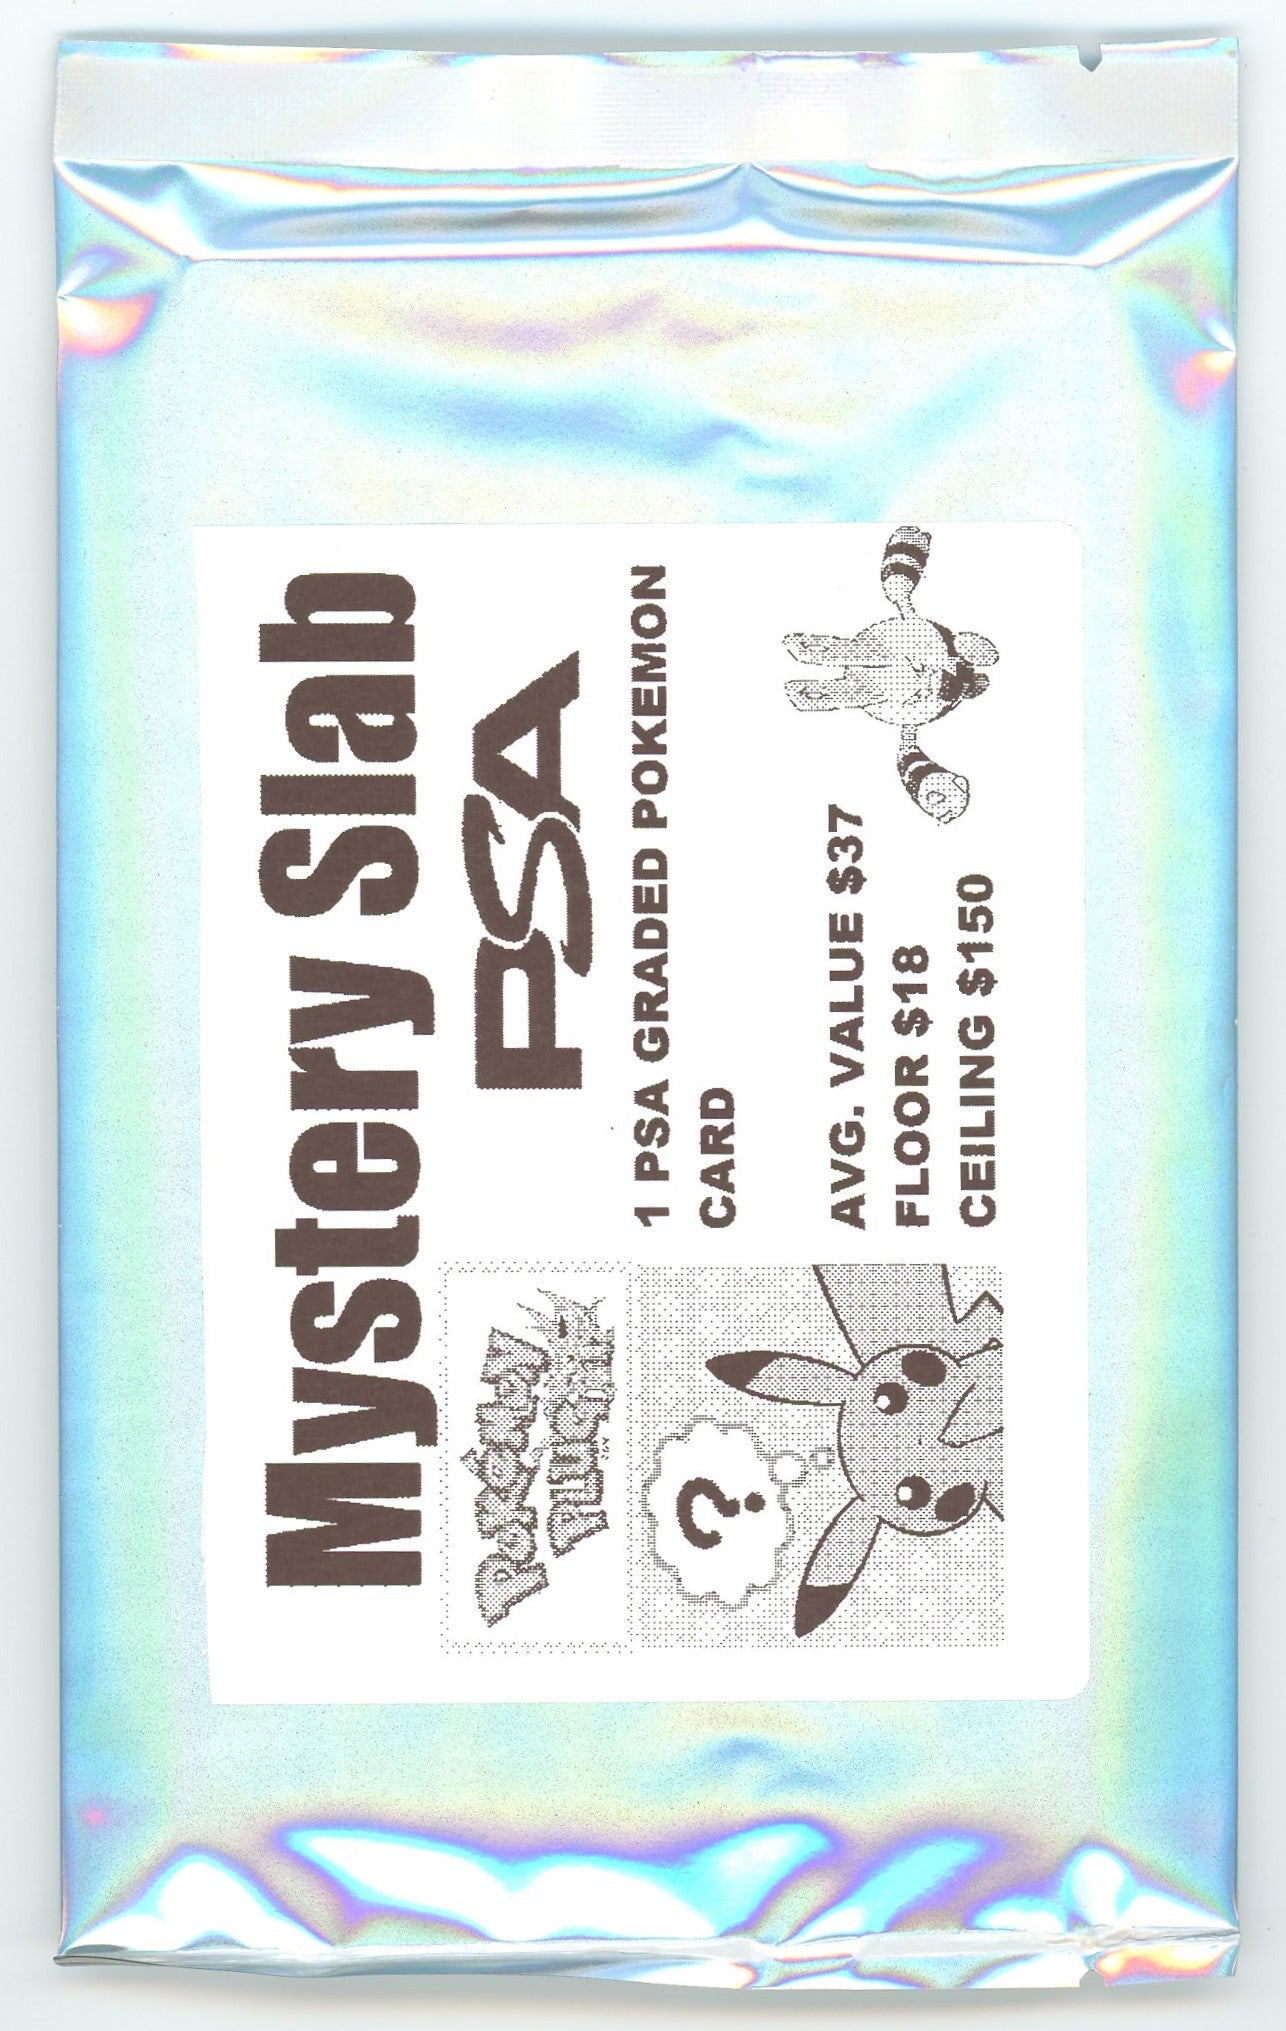 PokePlug - Mystery Slab Bag - 1 Graded Pokémon Card Per Pack